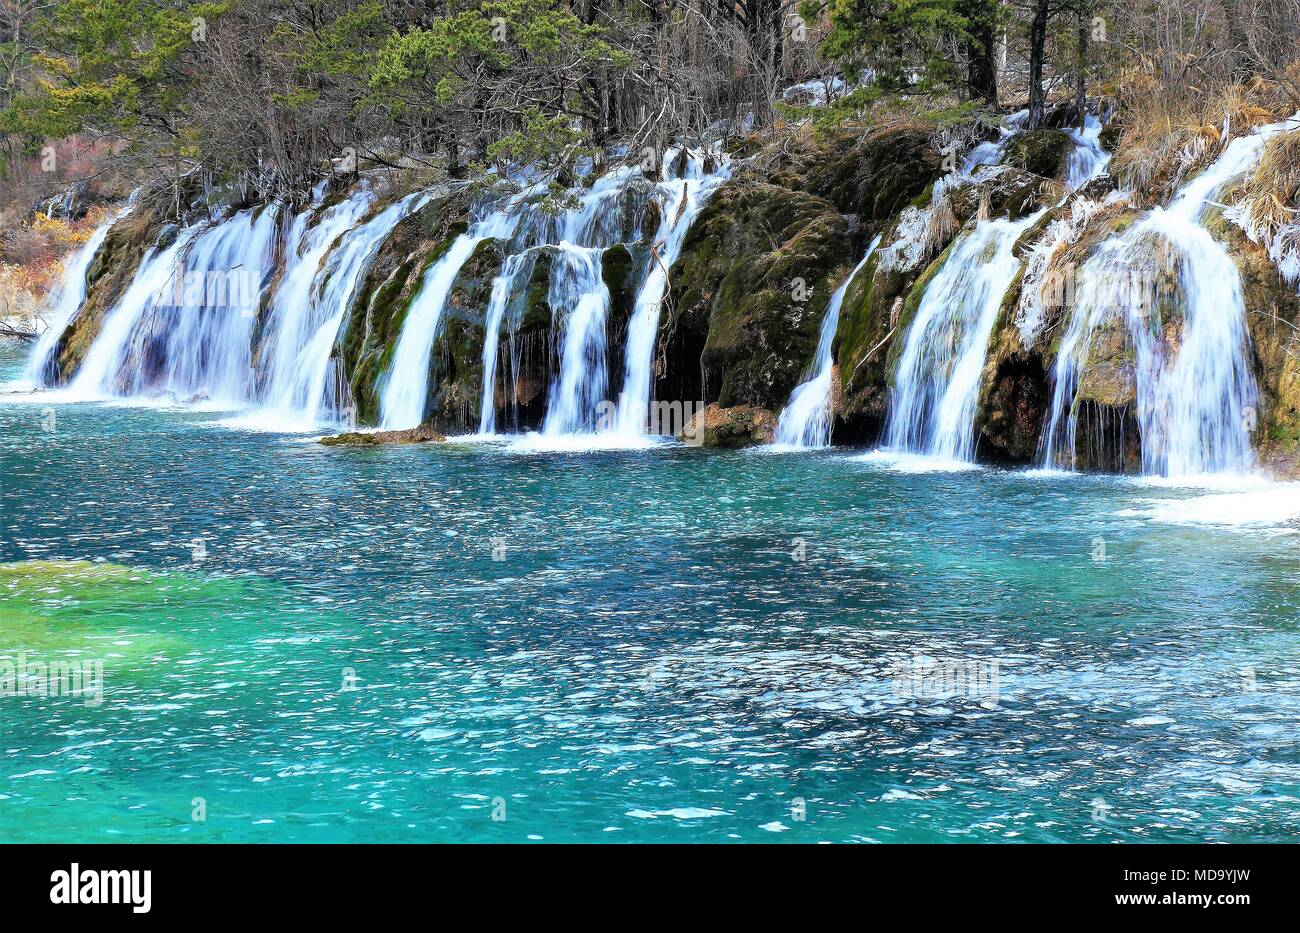 Belle cascade et lac azure avec de l'eau claire comme du cristal entre les bois d'automne dans la réserve naturelle de Jiuzhaigou (Jiuzhai Valley National Park) du Sichuan pr Banque D'Images